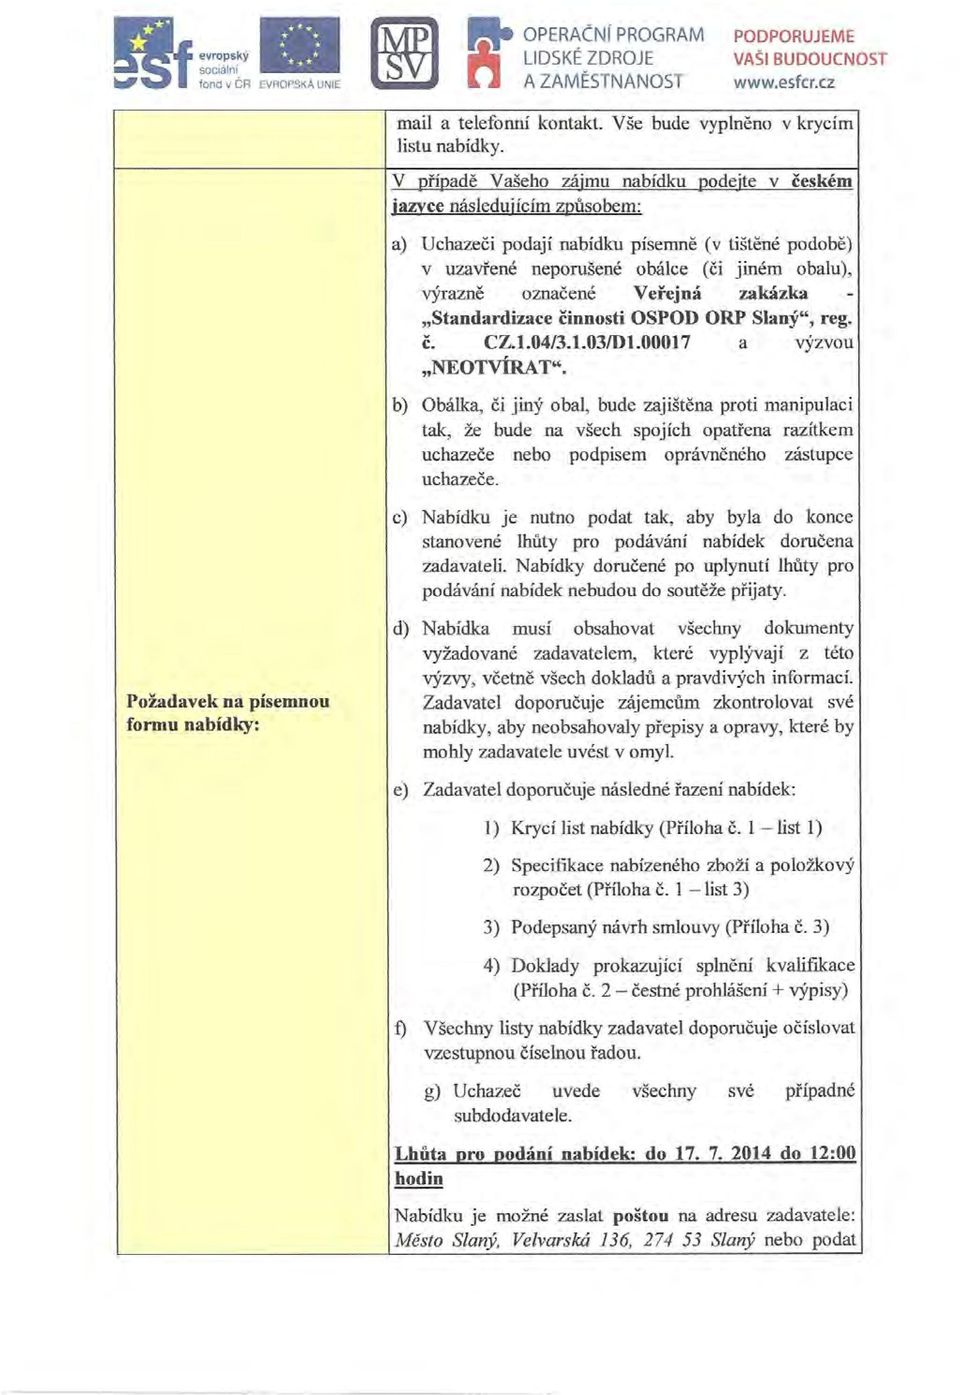 Veřejná zakázka - "Standardizace činnosti OSPOD ORP Slaný", reg. č. CZ.l.04/3.1.03/Dl.00017 a výzvou "NEOTVÍRAT".